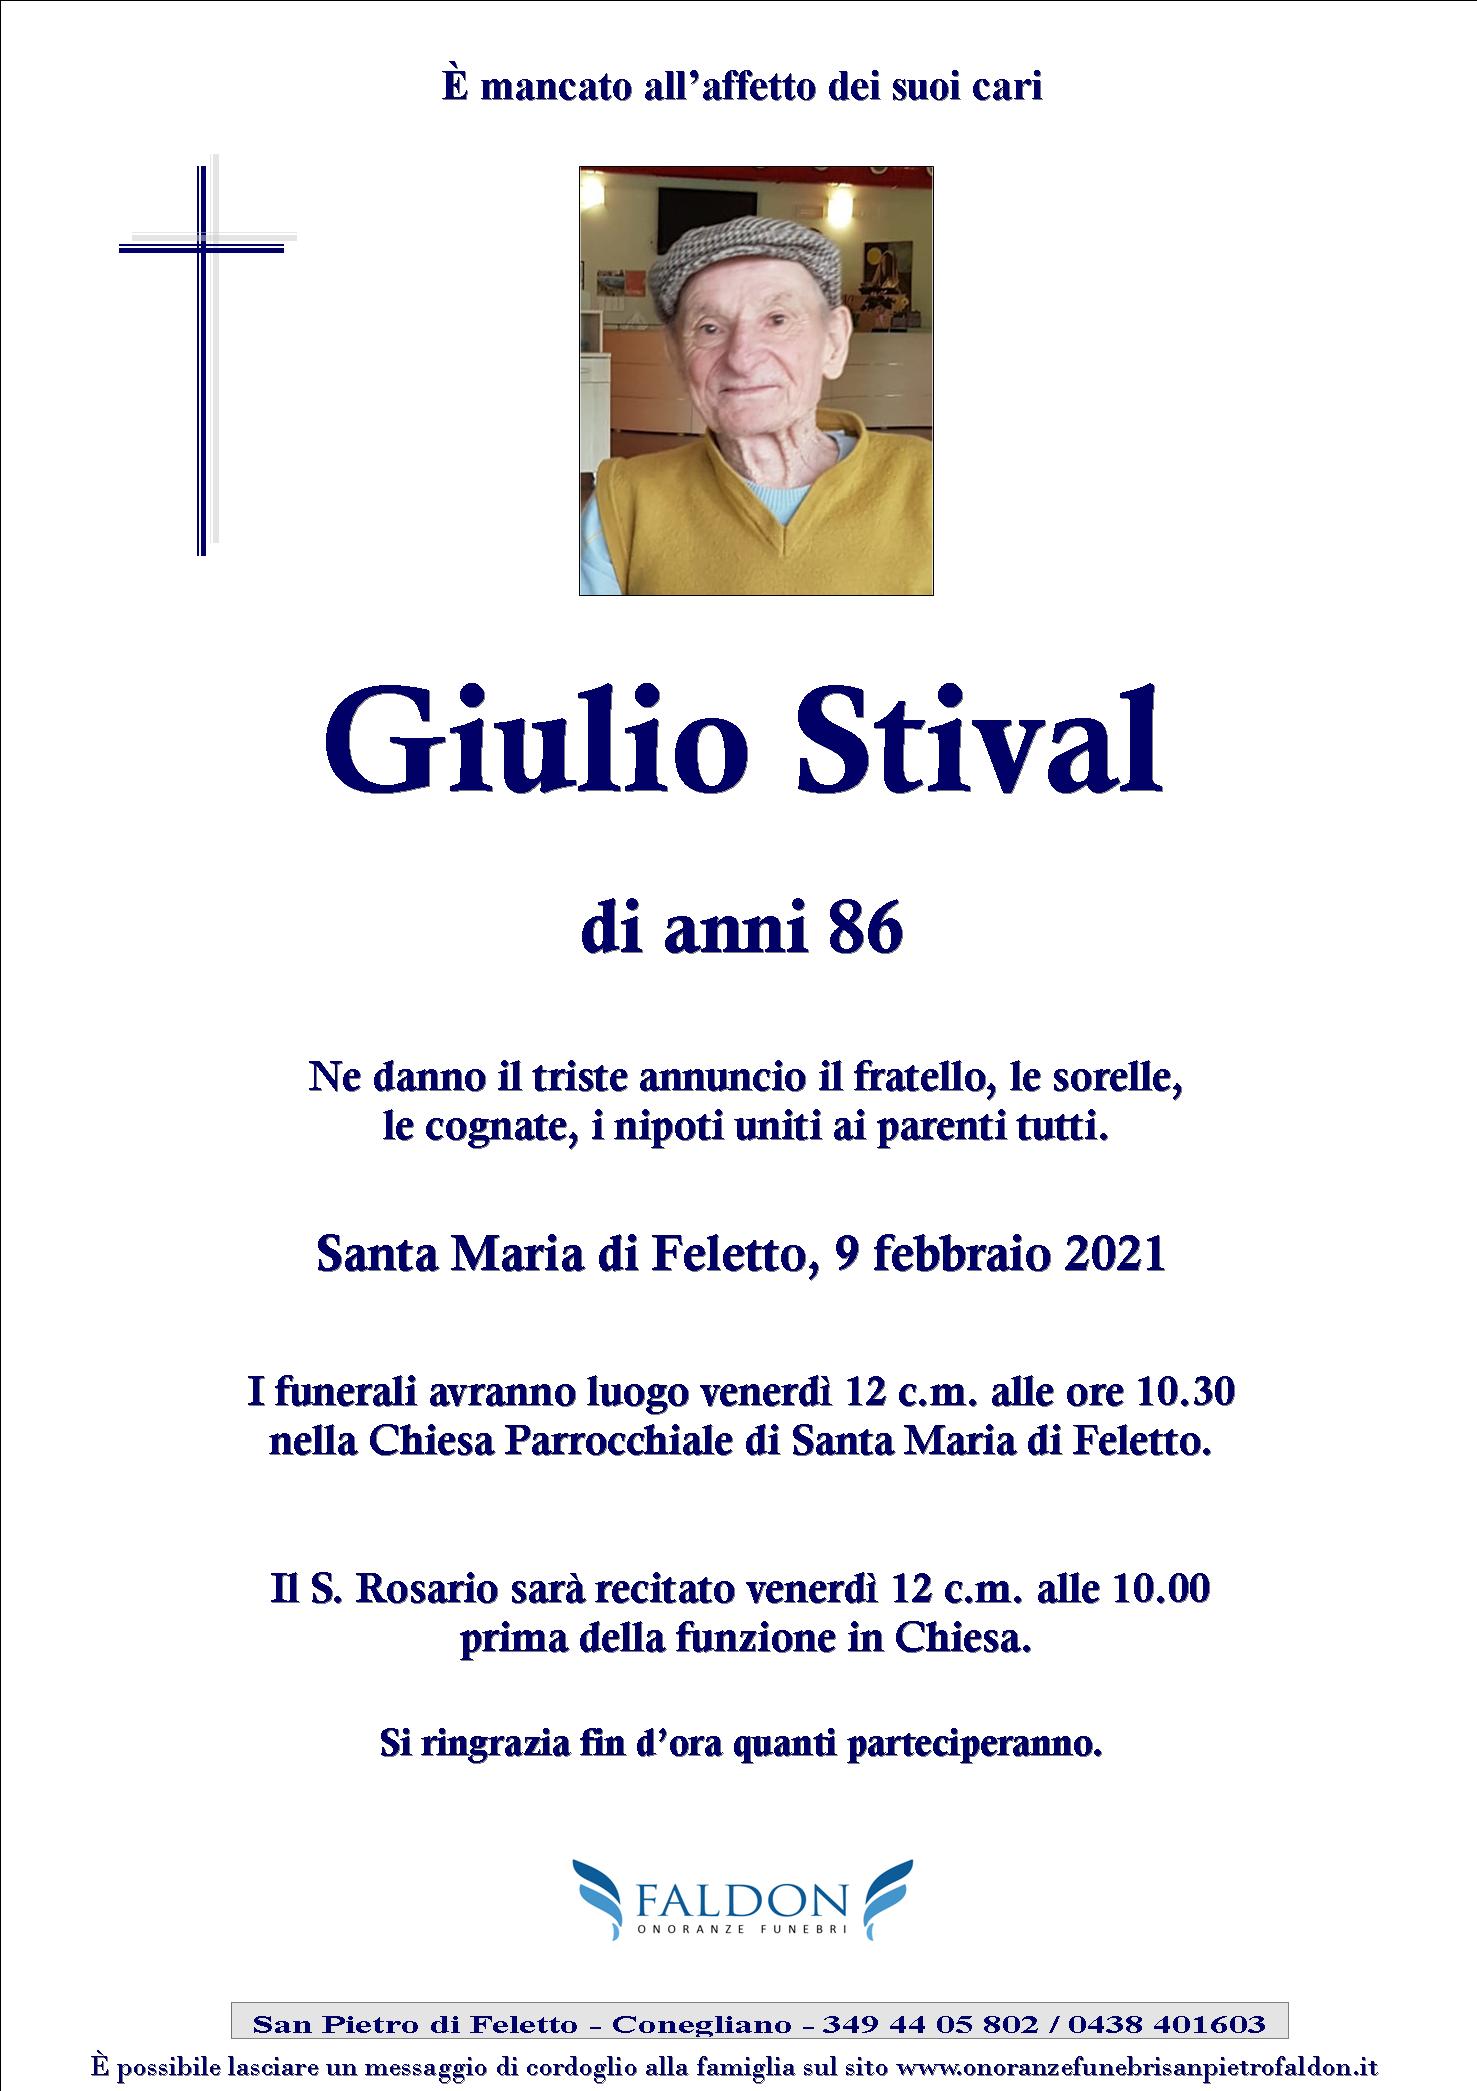 Giulio Stival